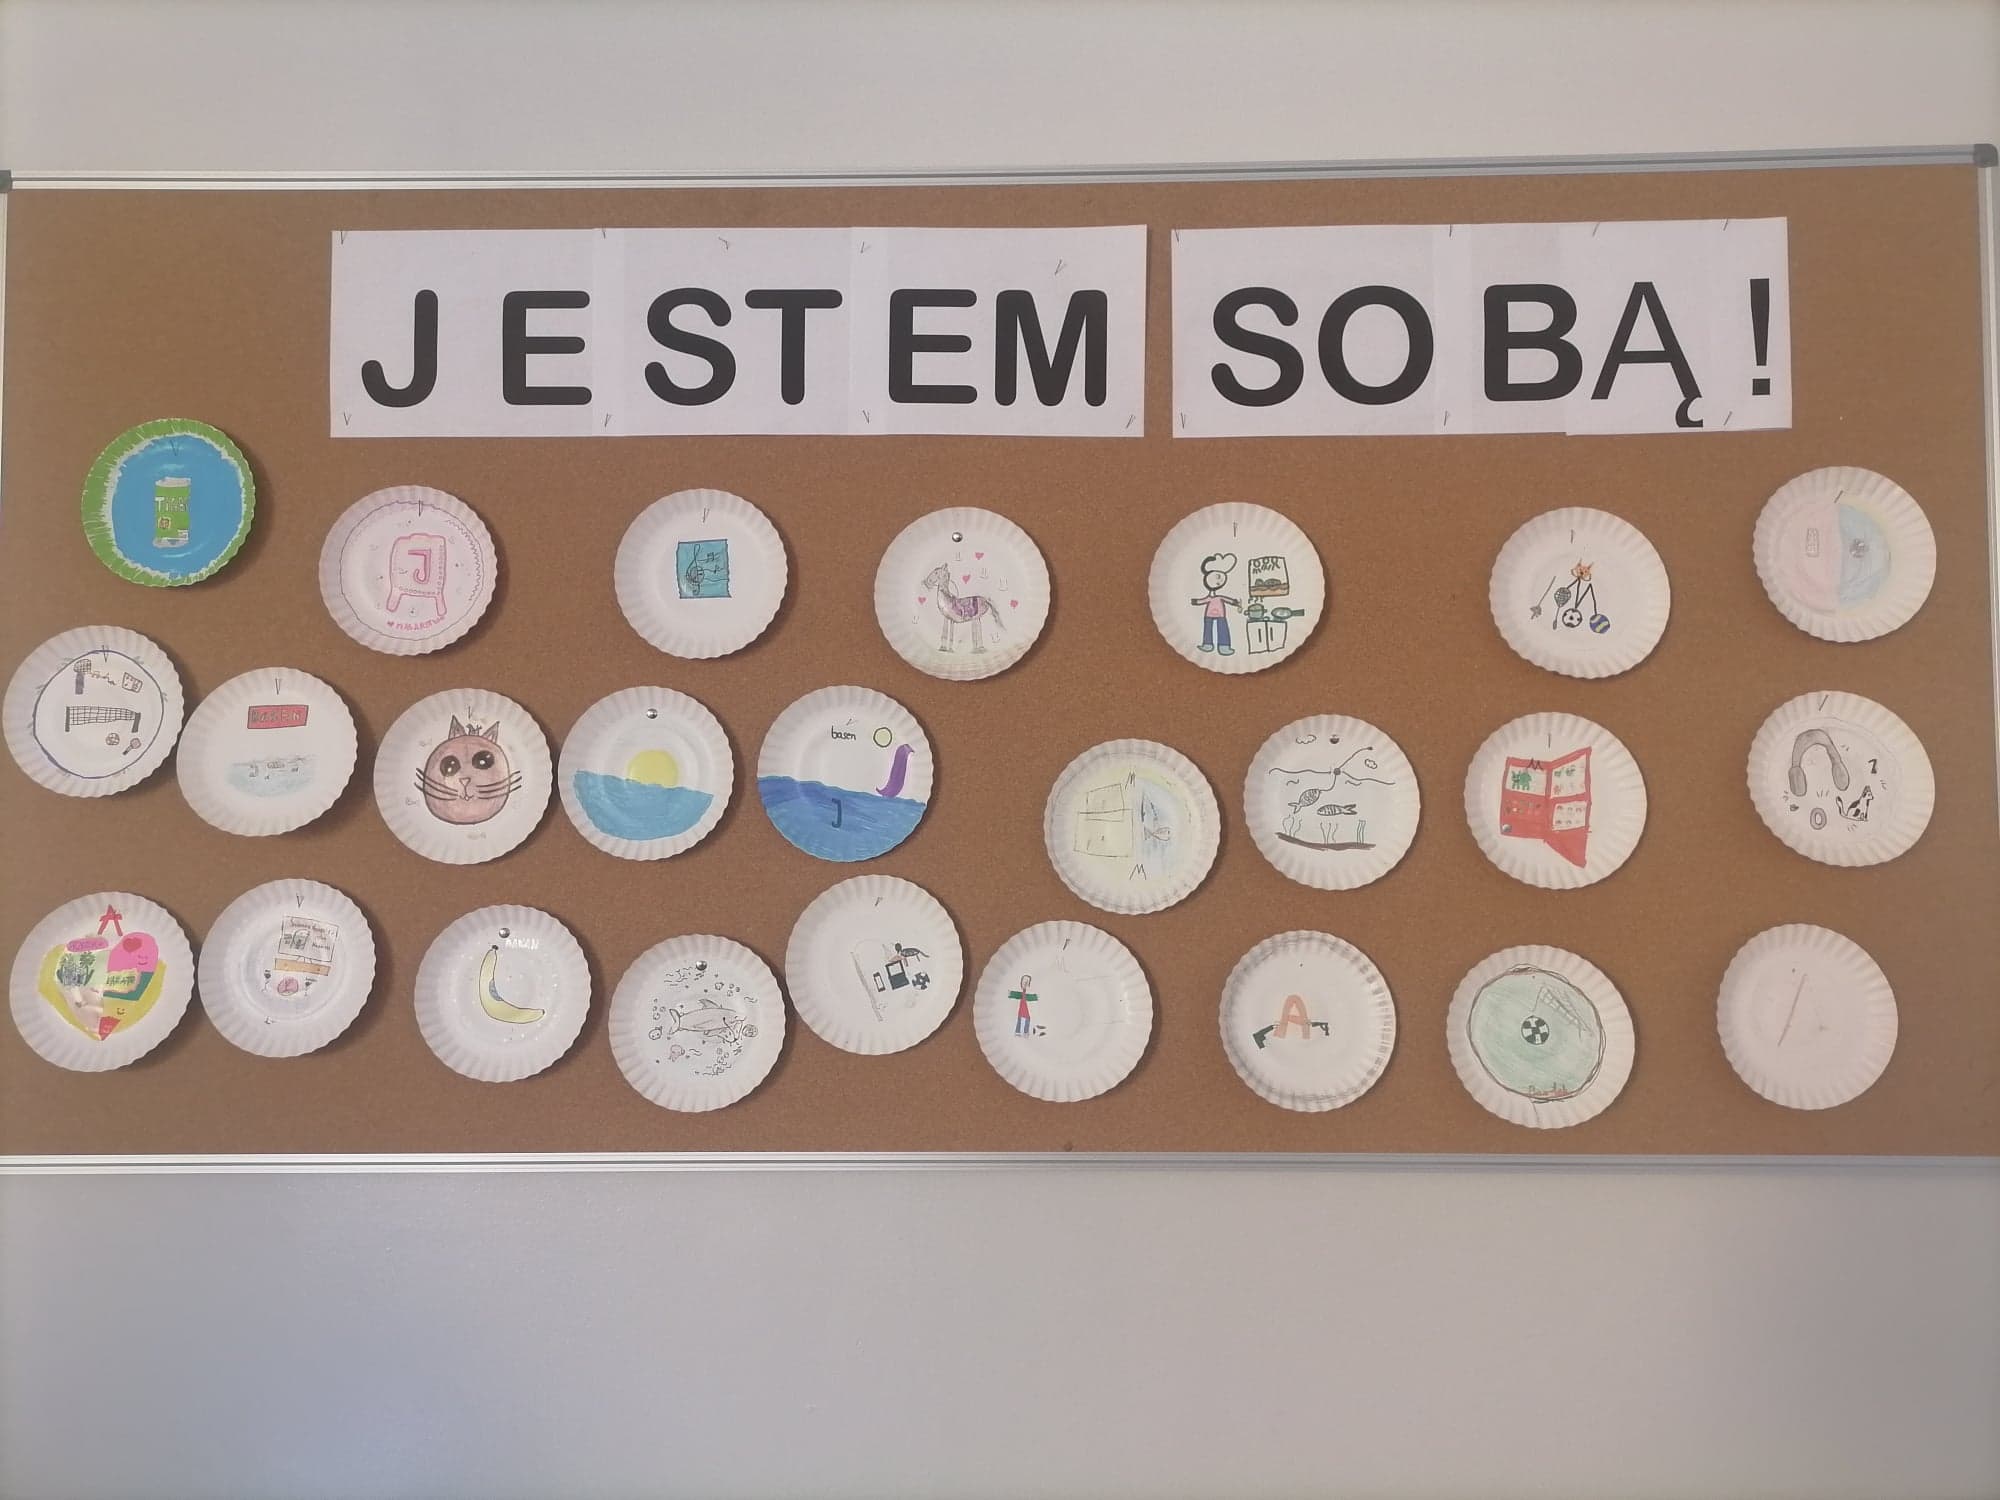 Zdjęcie przedstawia loga zaprojektowane przez uczniów klasy IVc. Ponad pracami uczniów widnieje hasło: "jestem sobą".